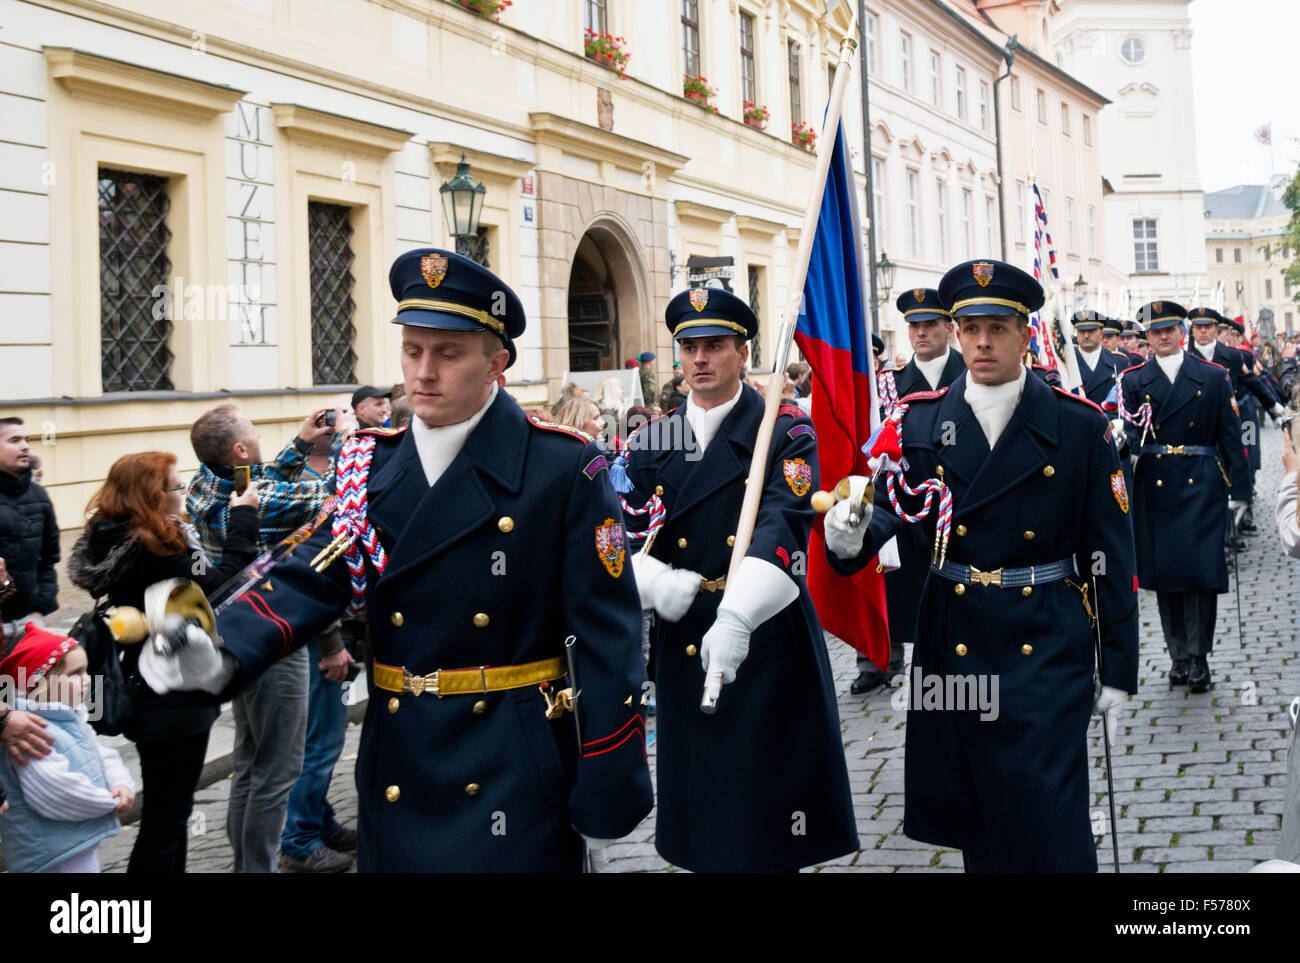 Castello di protezione sul giuramento militare, il Castello di Praga, Repubblica Ceca, Ottobre 28th, 2015 Credit: Vaclav Mach/Alamy Live News Foto Stock